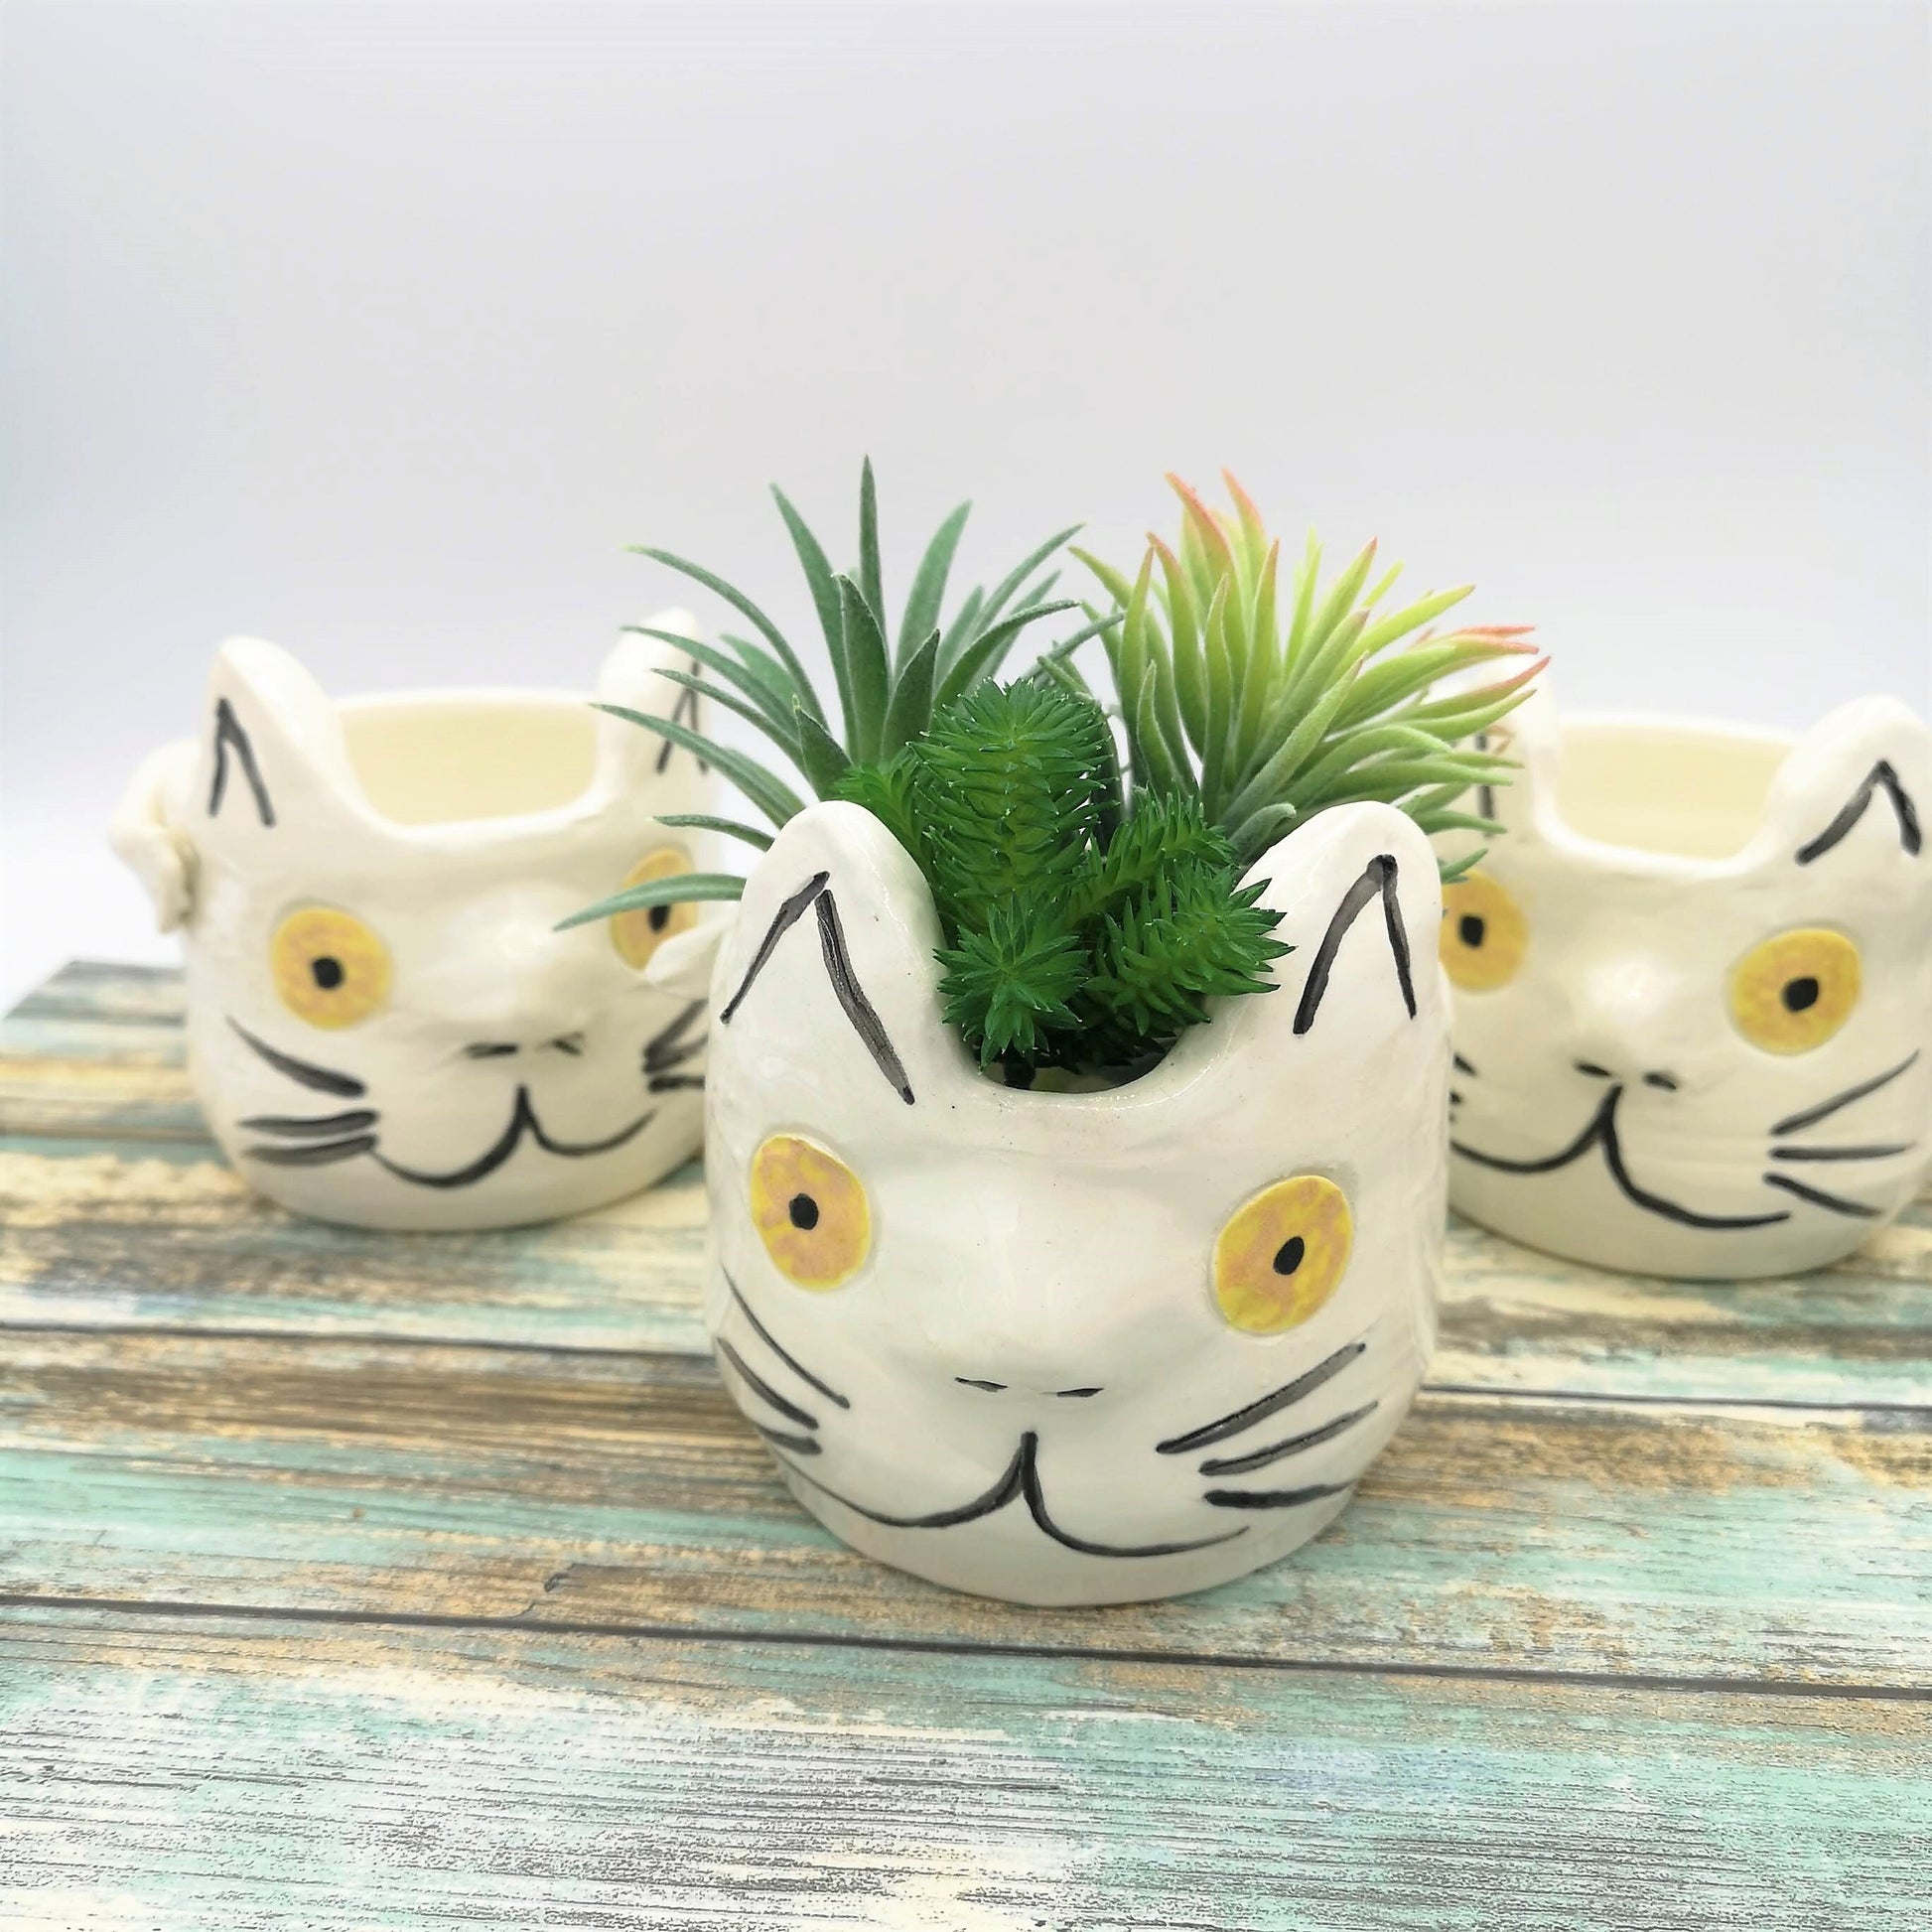 CAT PLANTER POT, Cat Succulent Planter, Cute Animal Cactus Planter, Unique Cat Lover Gift - Ceramica Ana Rafael